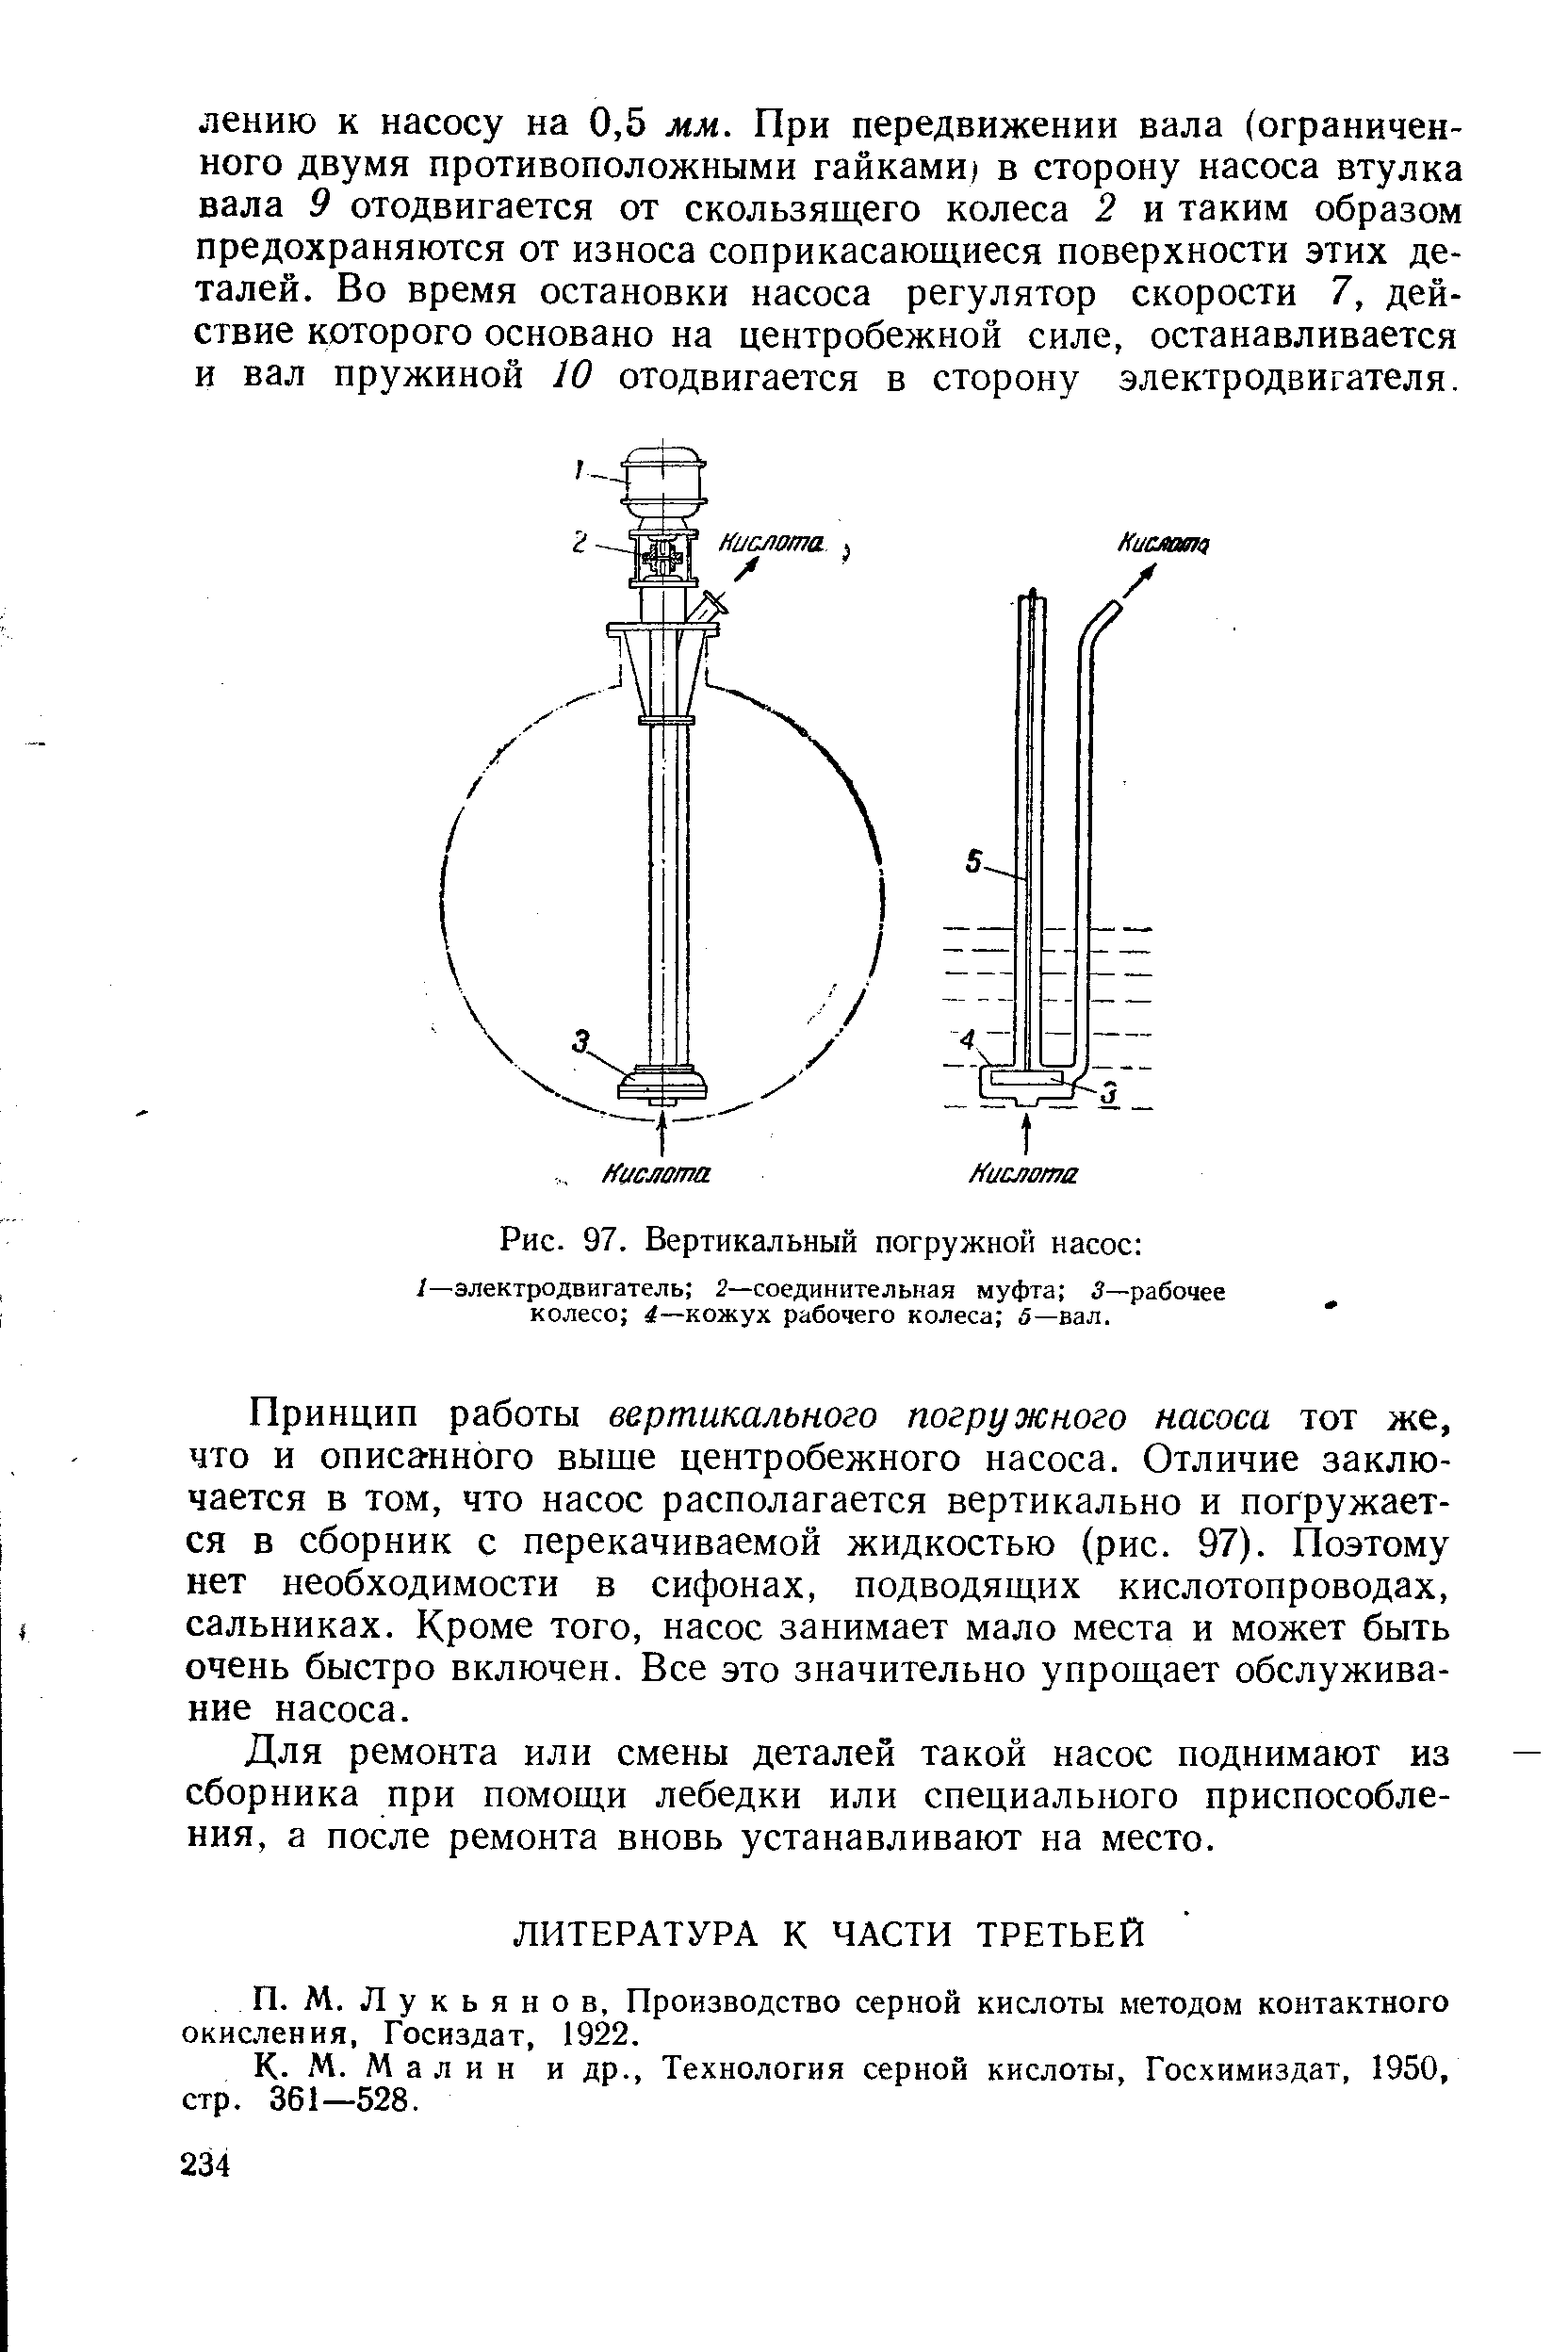 Л у к ь я н о в, Производство серной кислоты методом контактного окисления, Госиздат, 1922.